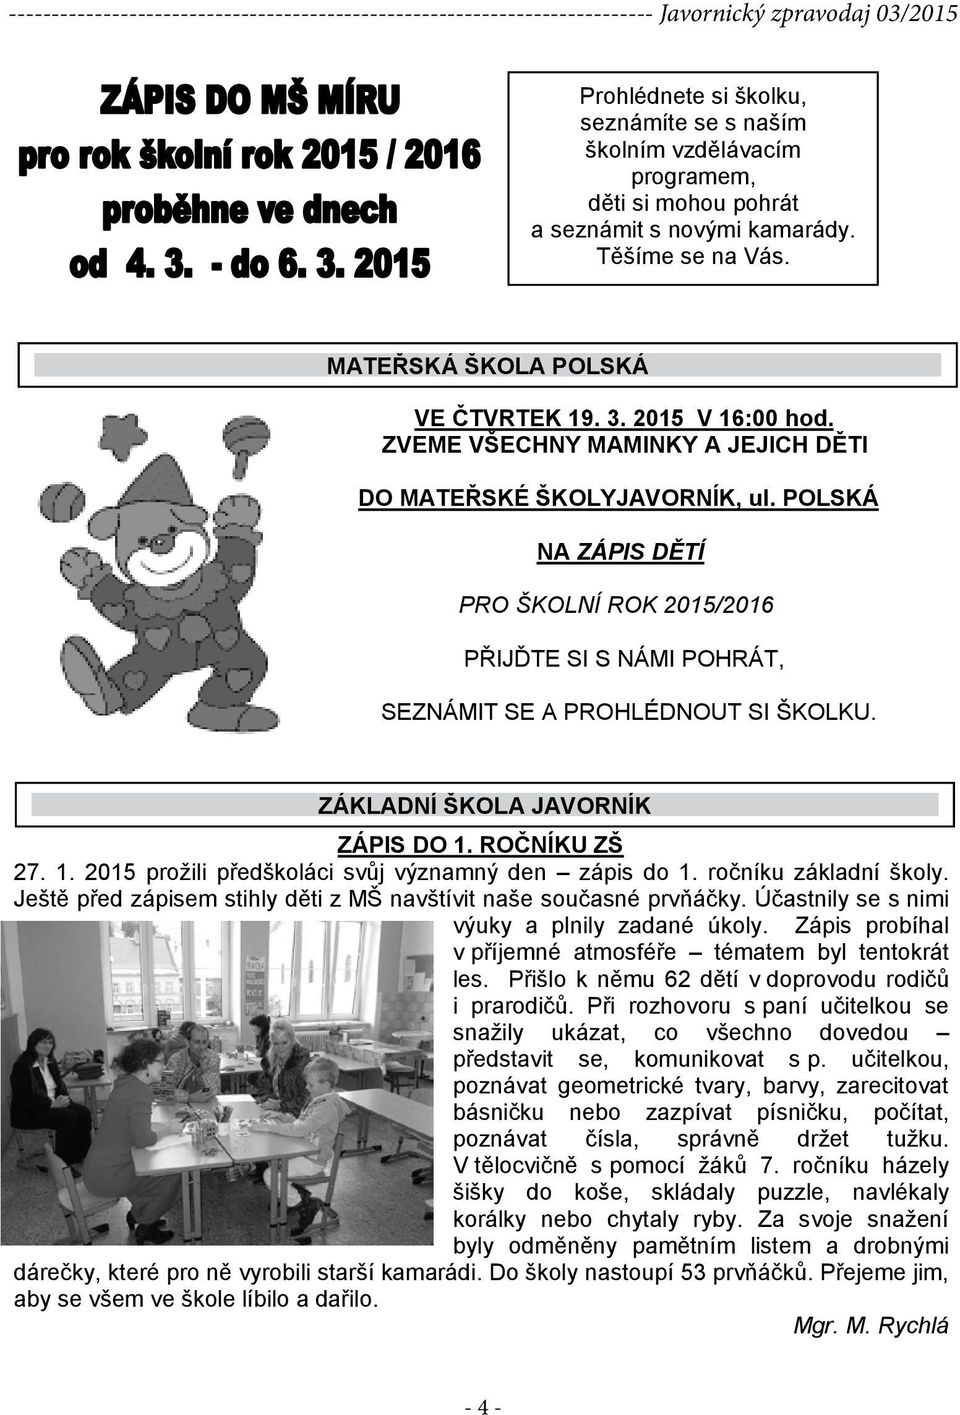 ZÁKLADNÍ ŠKOLA JAVORNÍK ZÁPIS DO 1. ROČNÍKU ZŠ 27. 1. 2015 prožili předškoláci svůj významný den zápis do 1. ročníku základní školy.